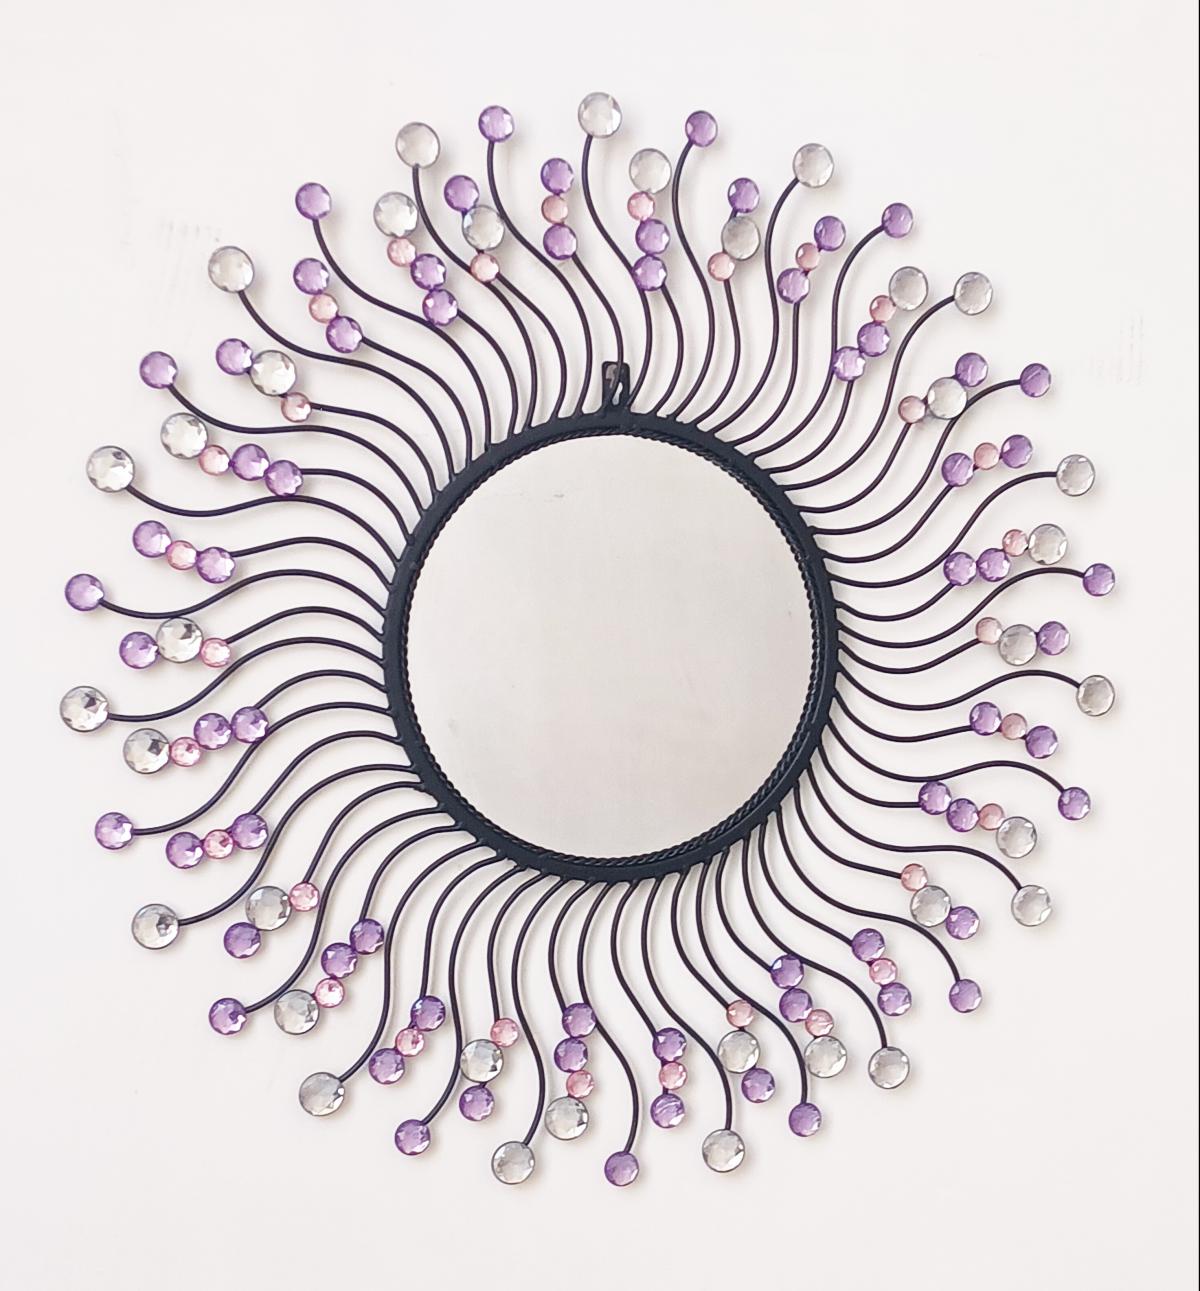 Round mirror with pink gem beads